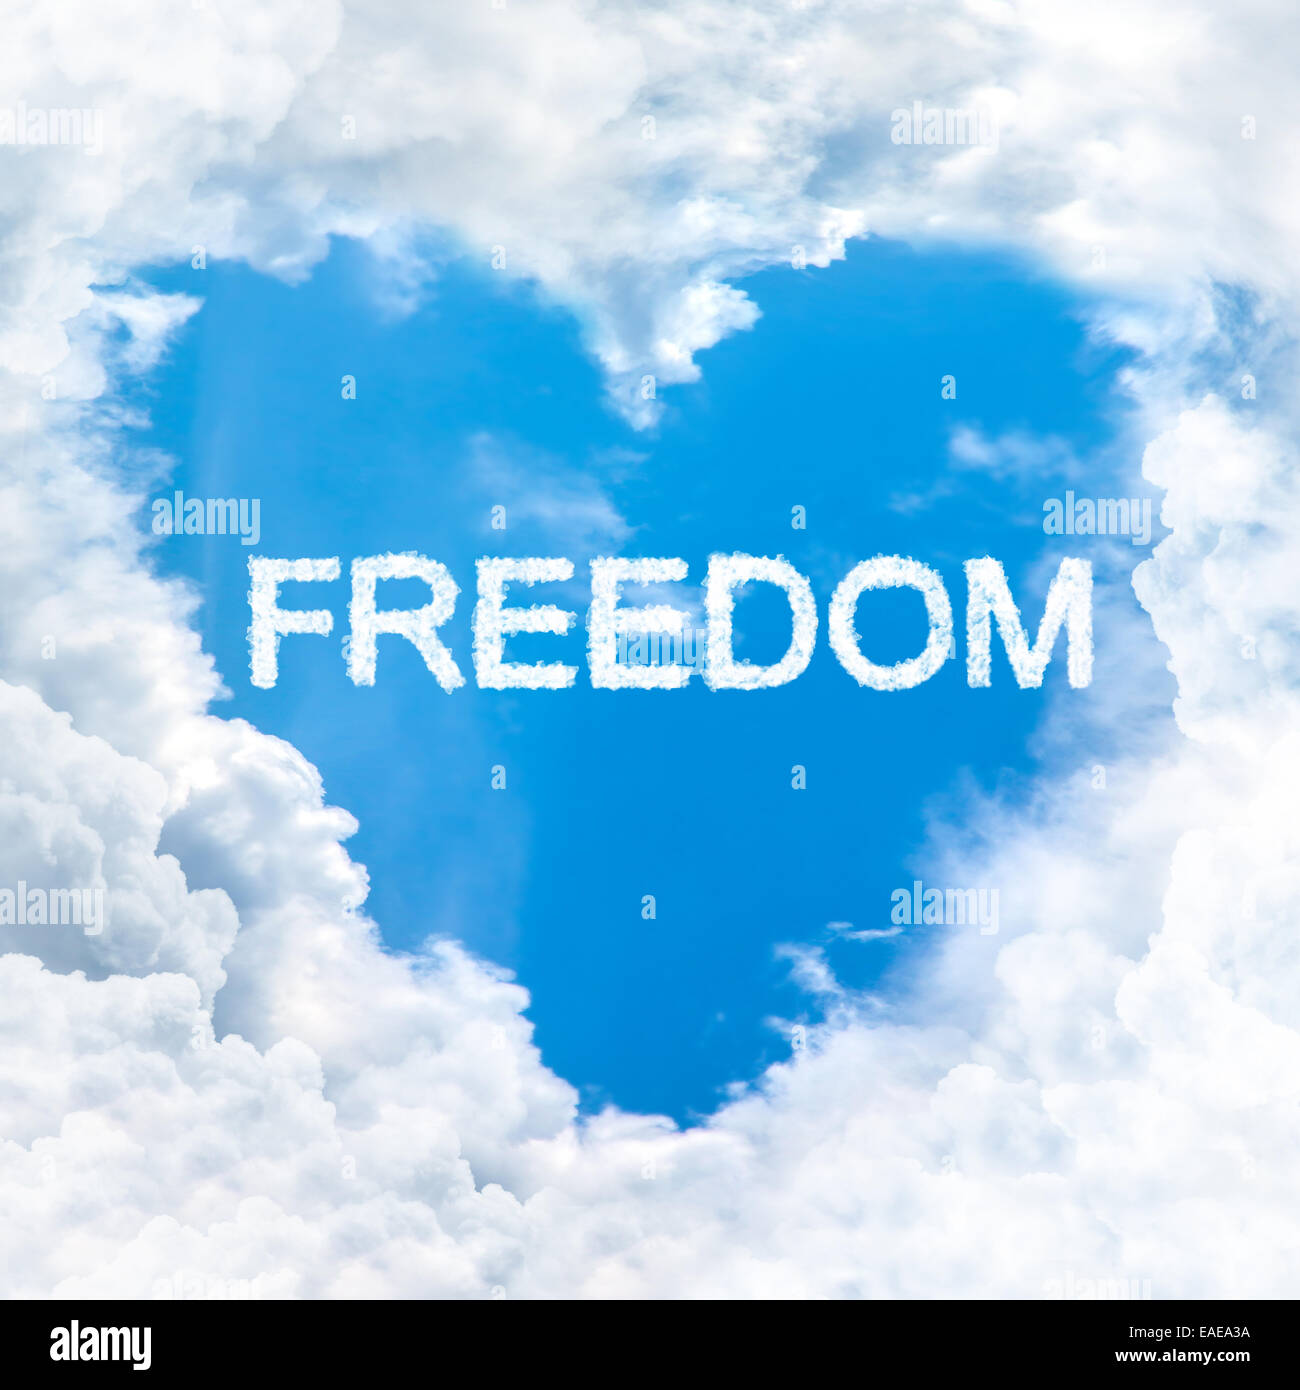 Aman la libertad palabra sobre cielo azul dentro del corazón forma de nube Foto de stock